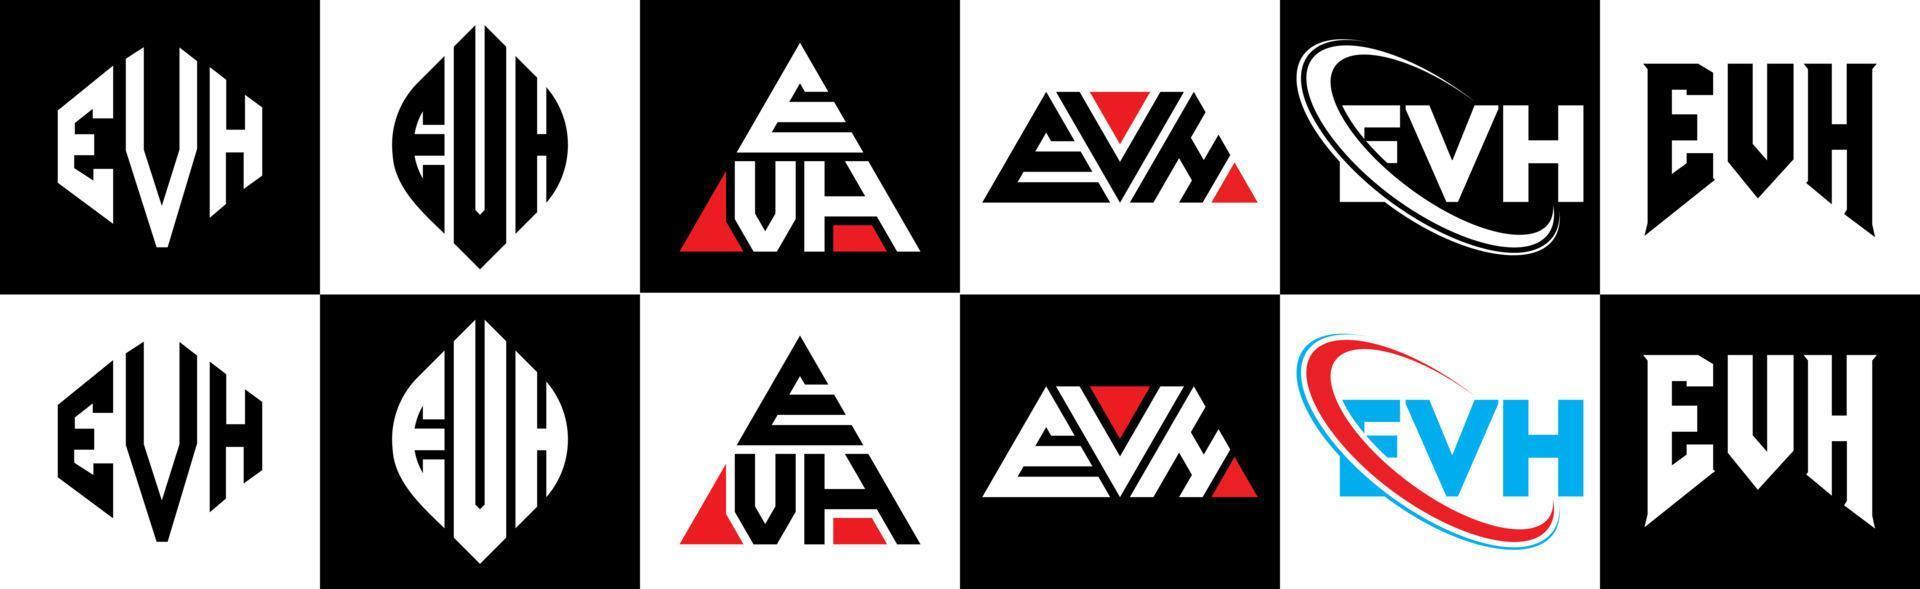 création de logo de lettre evh en six styles. evh polygone, cercle, triangle, hexagone, style plat et simple avec logo de lettre de variation de couleur noir et blanc dans un plan de travail. logo evh minimaliste et classique vecteur